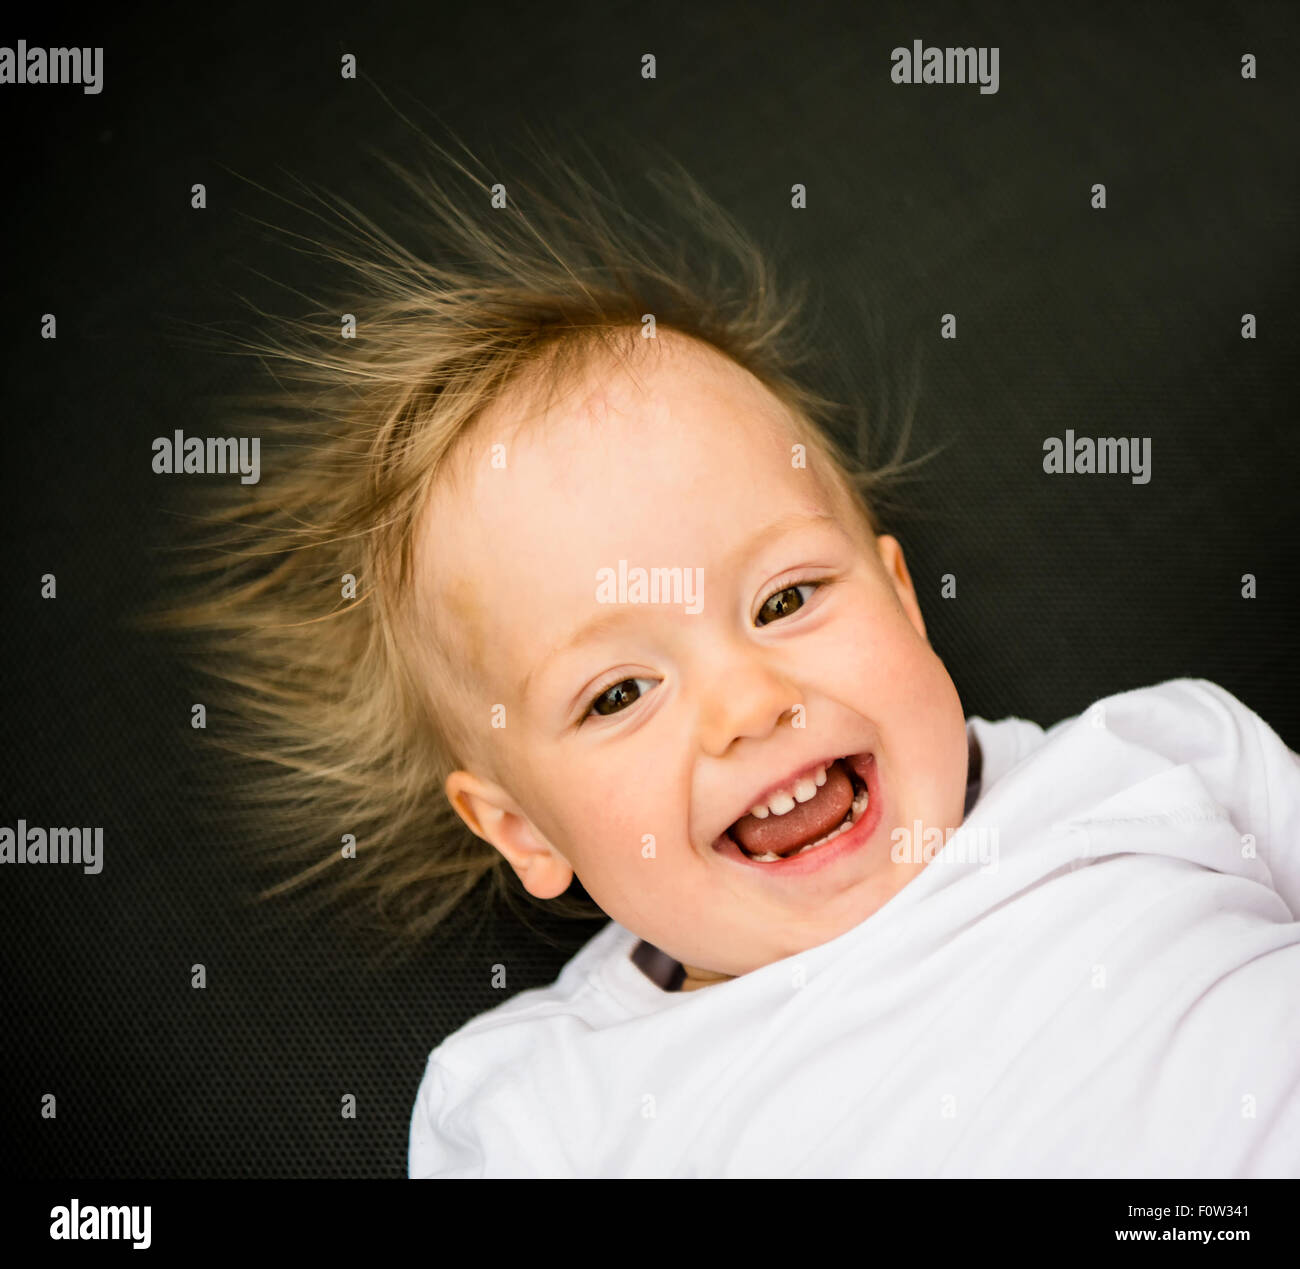 Ritratto di Laughing baby con capelli permanente da elettricità statica Foto Stock